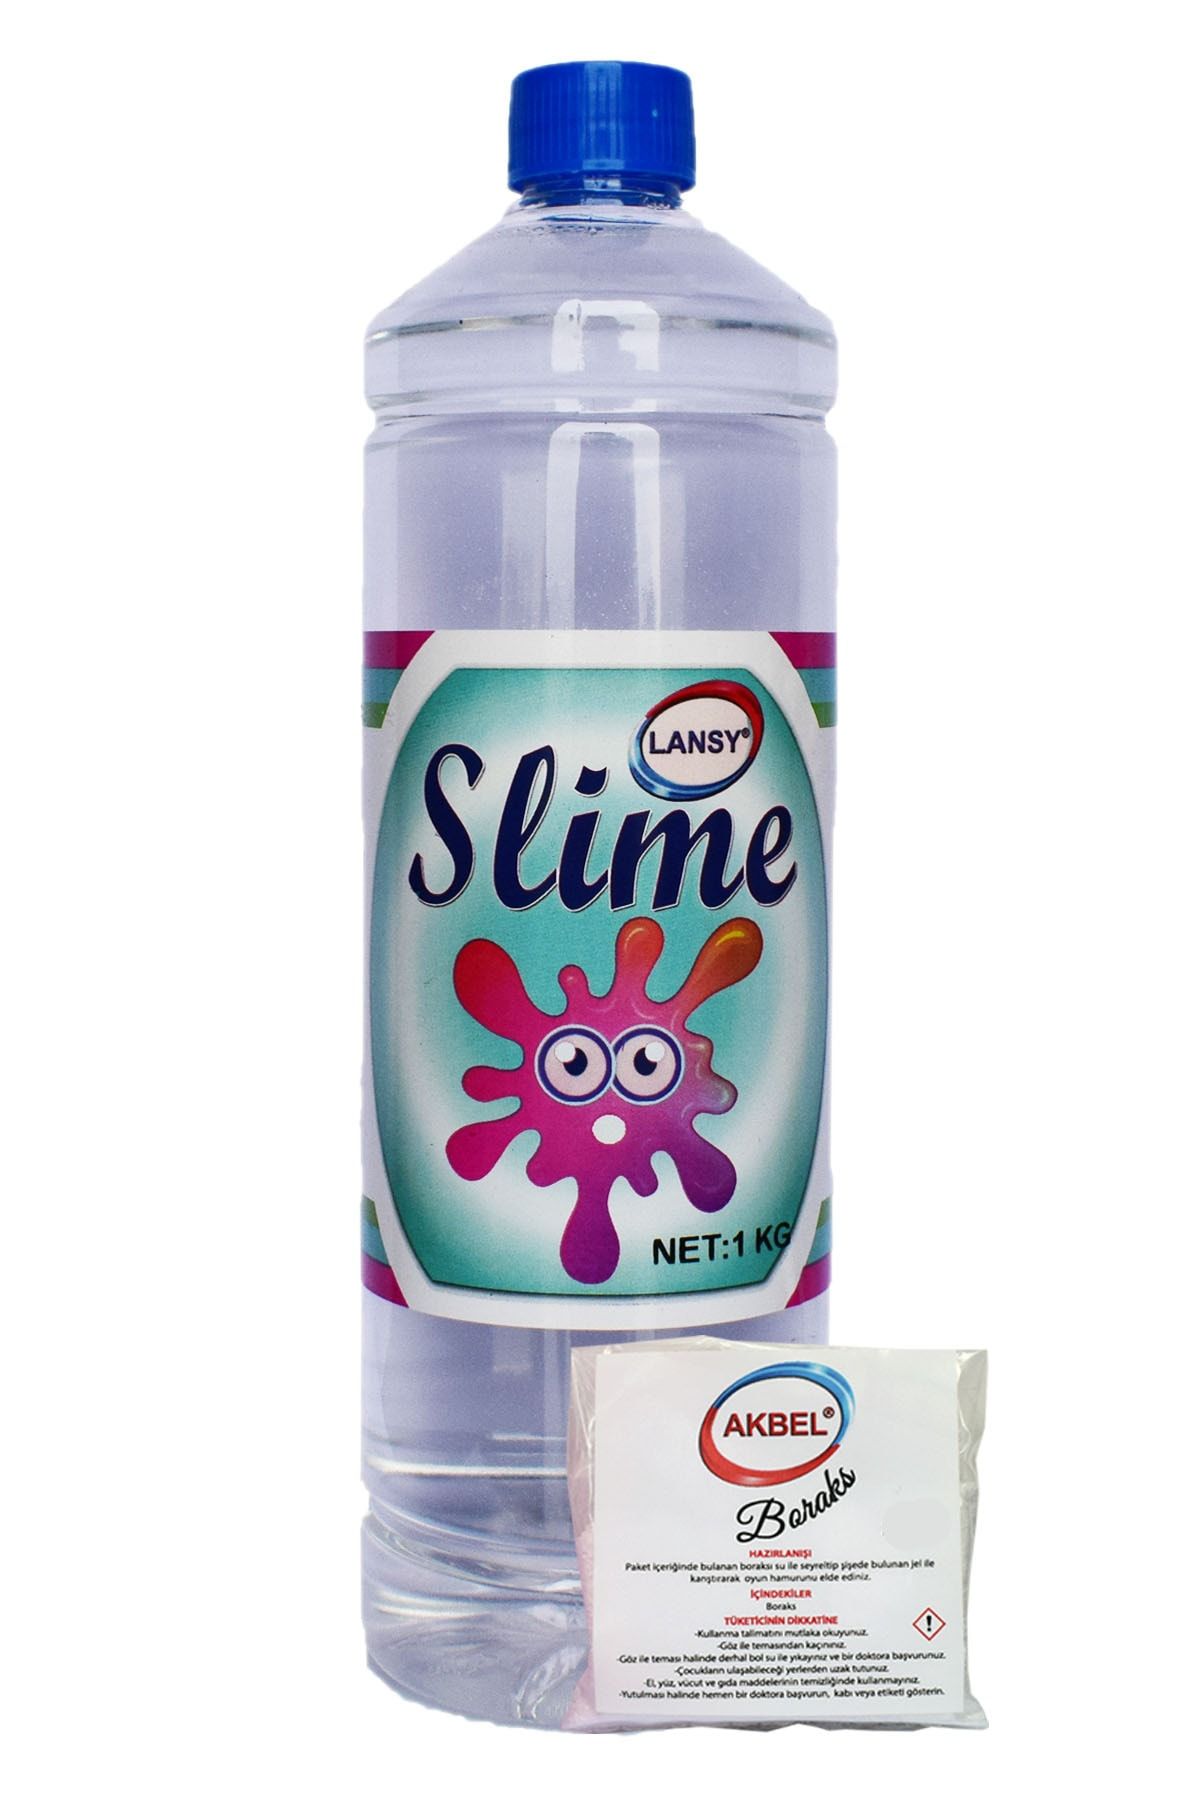 lansy Slime Oyun Jeli Boyasız Şeffaf 1 Kg + 25 gr Boraks